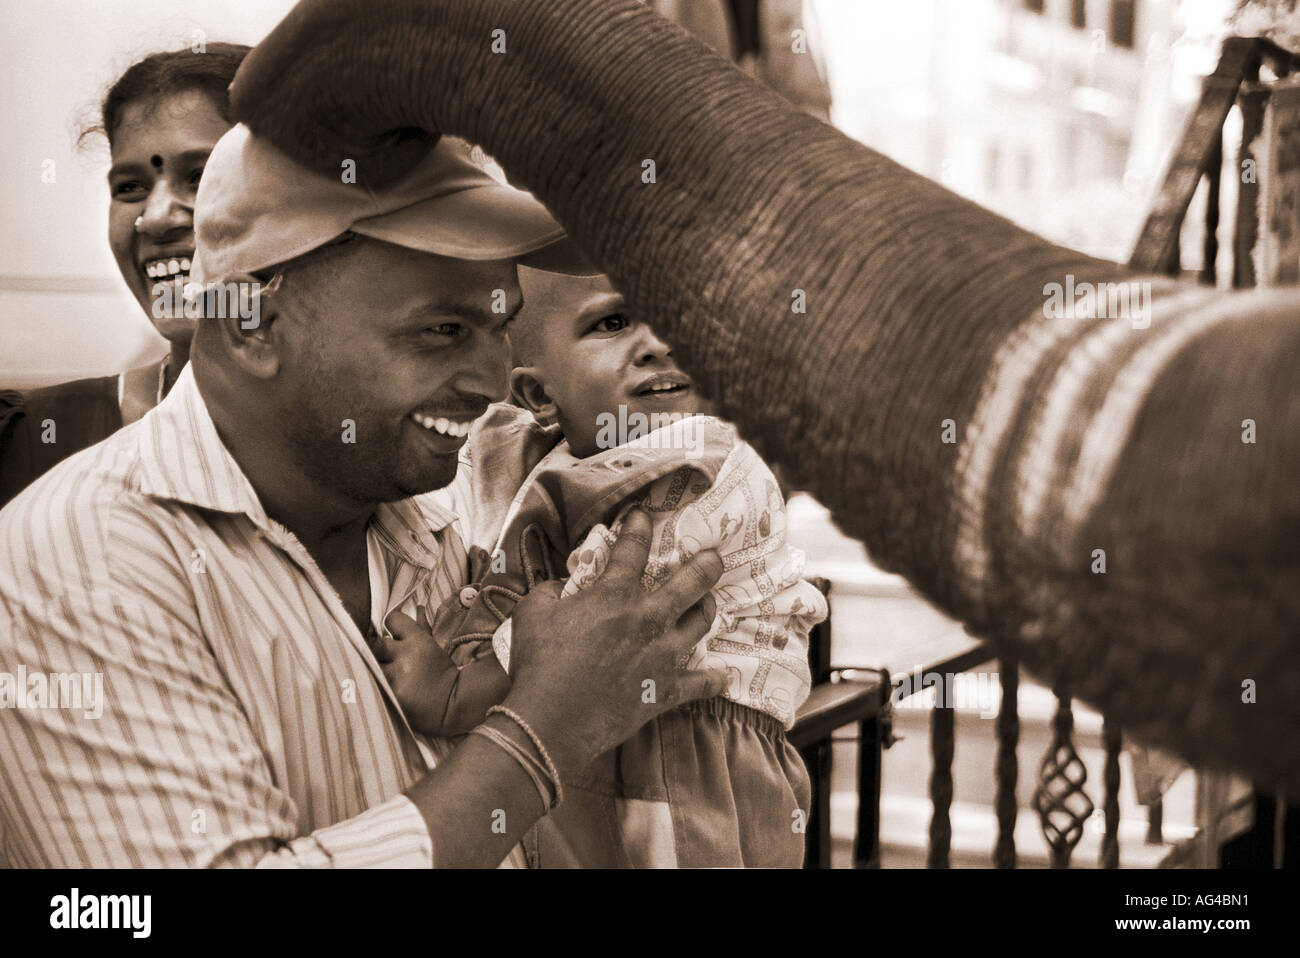 ARF79259 Un éléphant bénit une famille dans une rue à Bangalore Inde Banque D'Images